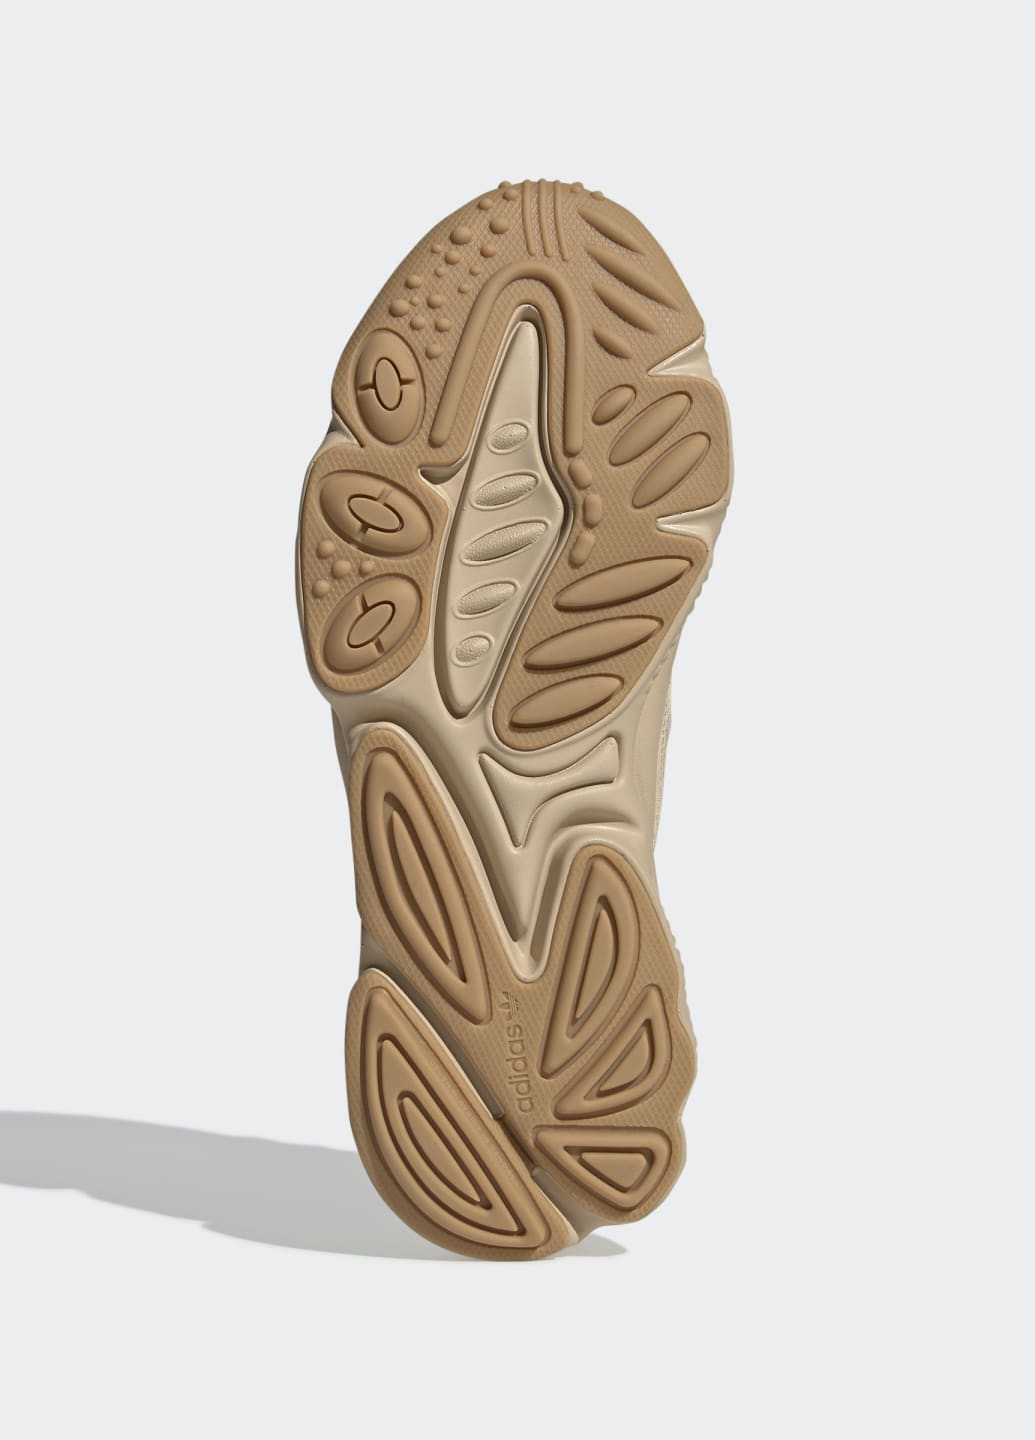 Бежевые всесезонные кроссовки ozweego adidas